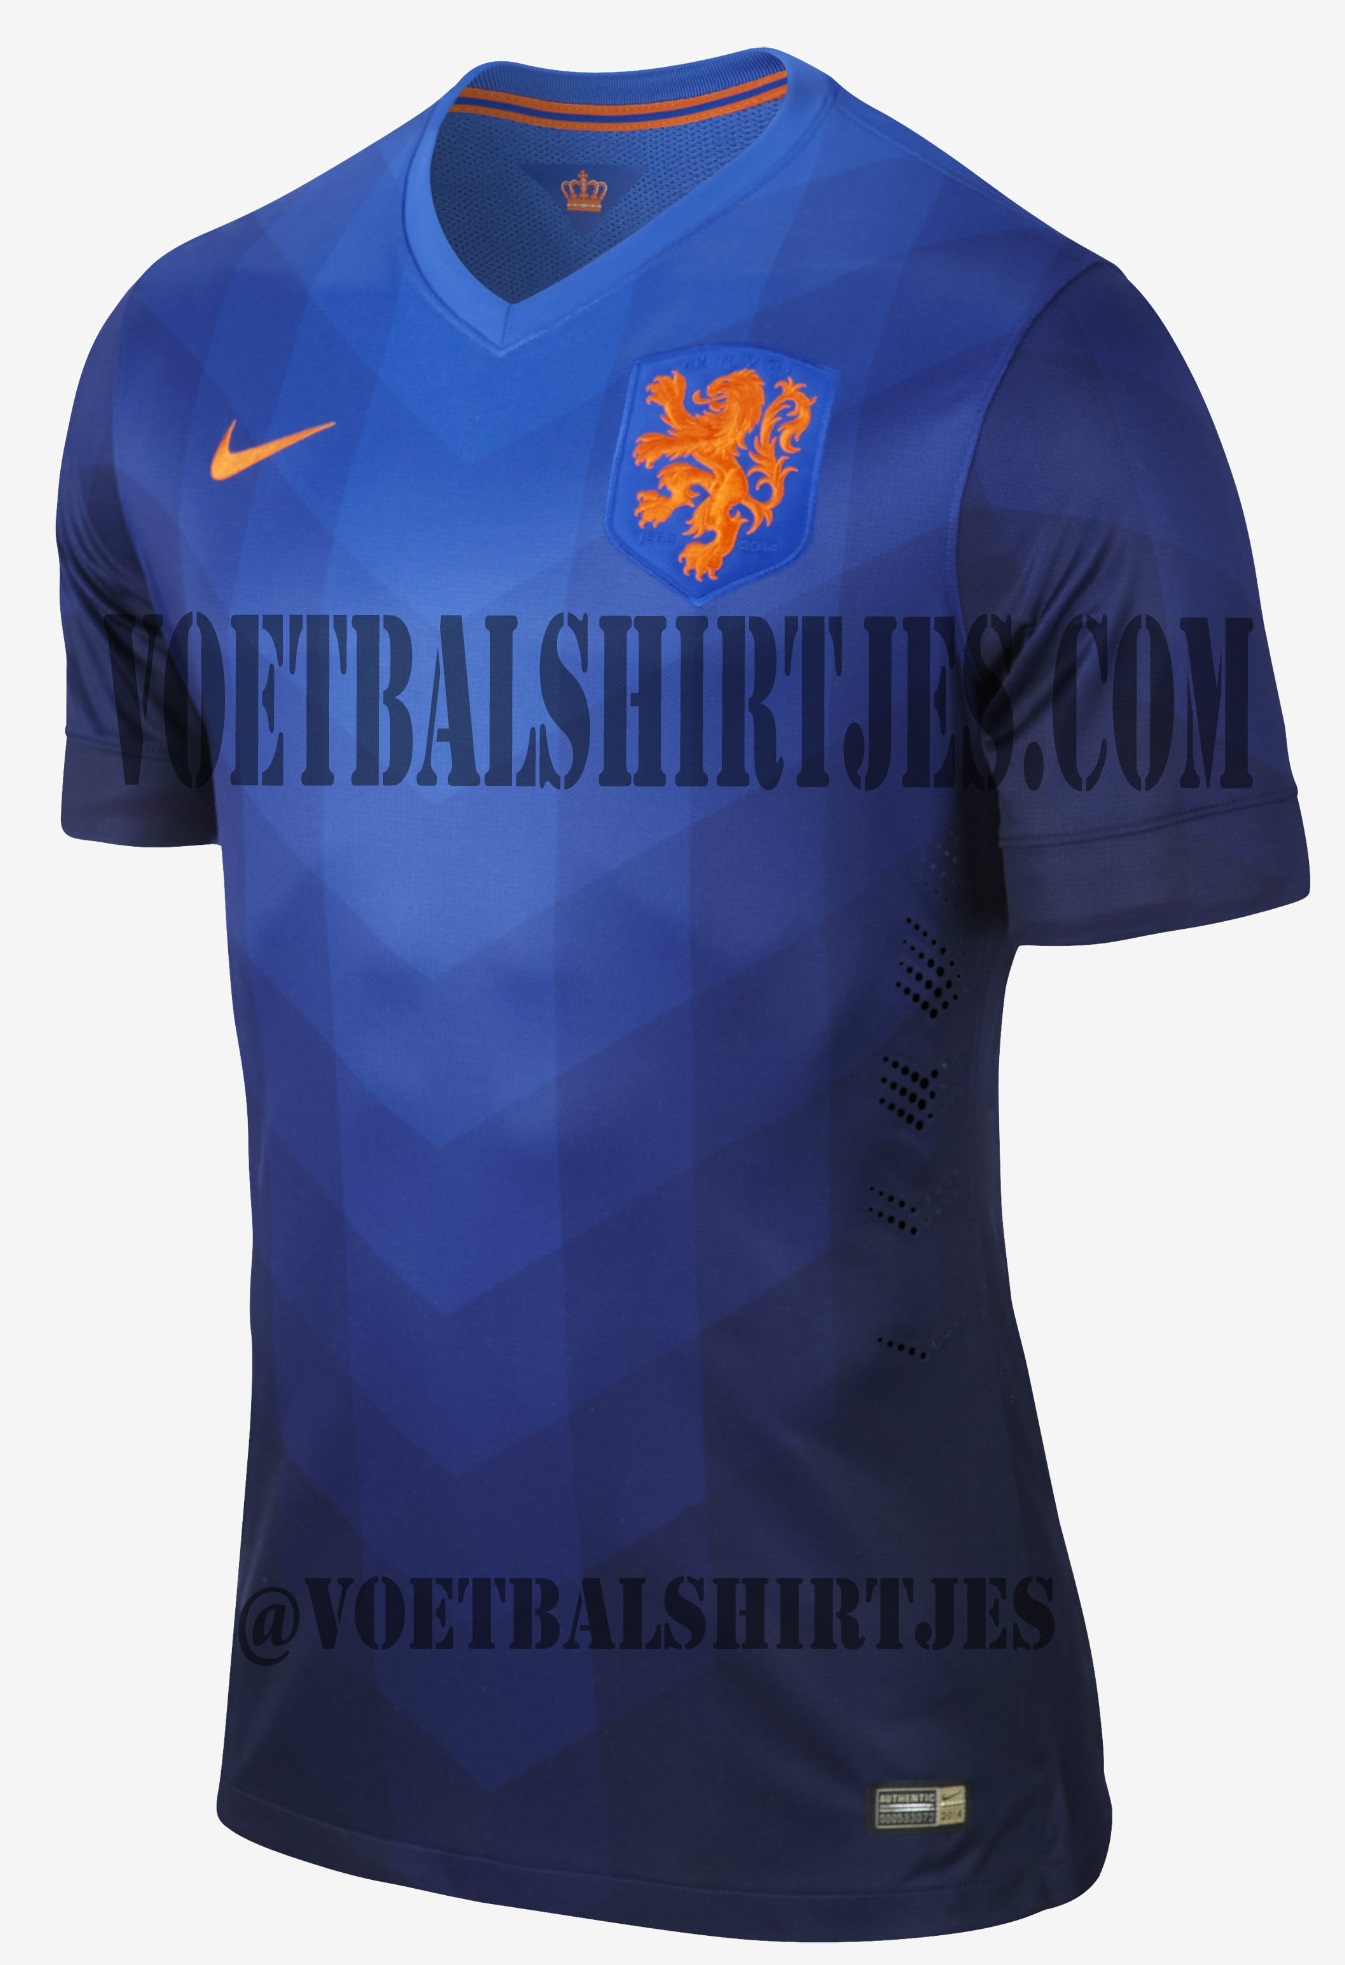 uit Aanvulling Voorspellen Nederlands Elftal uitshirt WK 2014 - Voetbalshirtjes.com